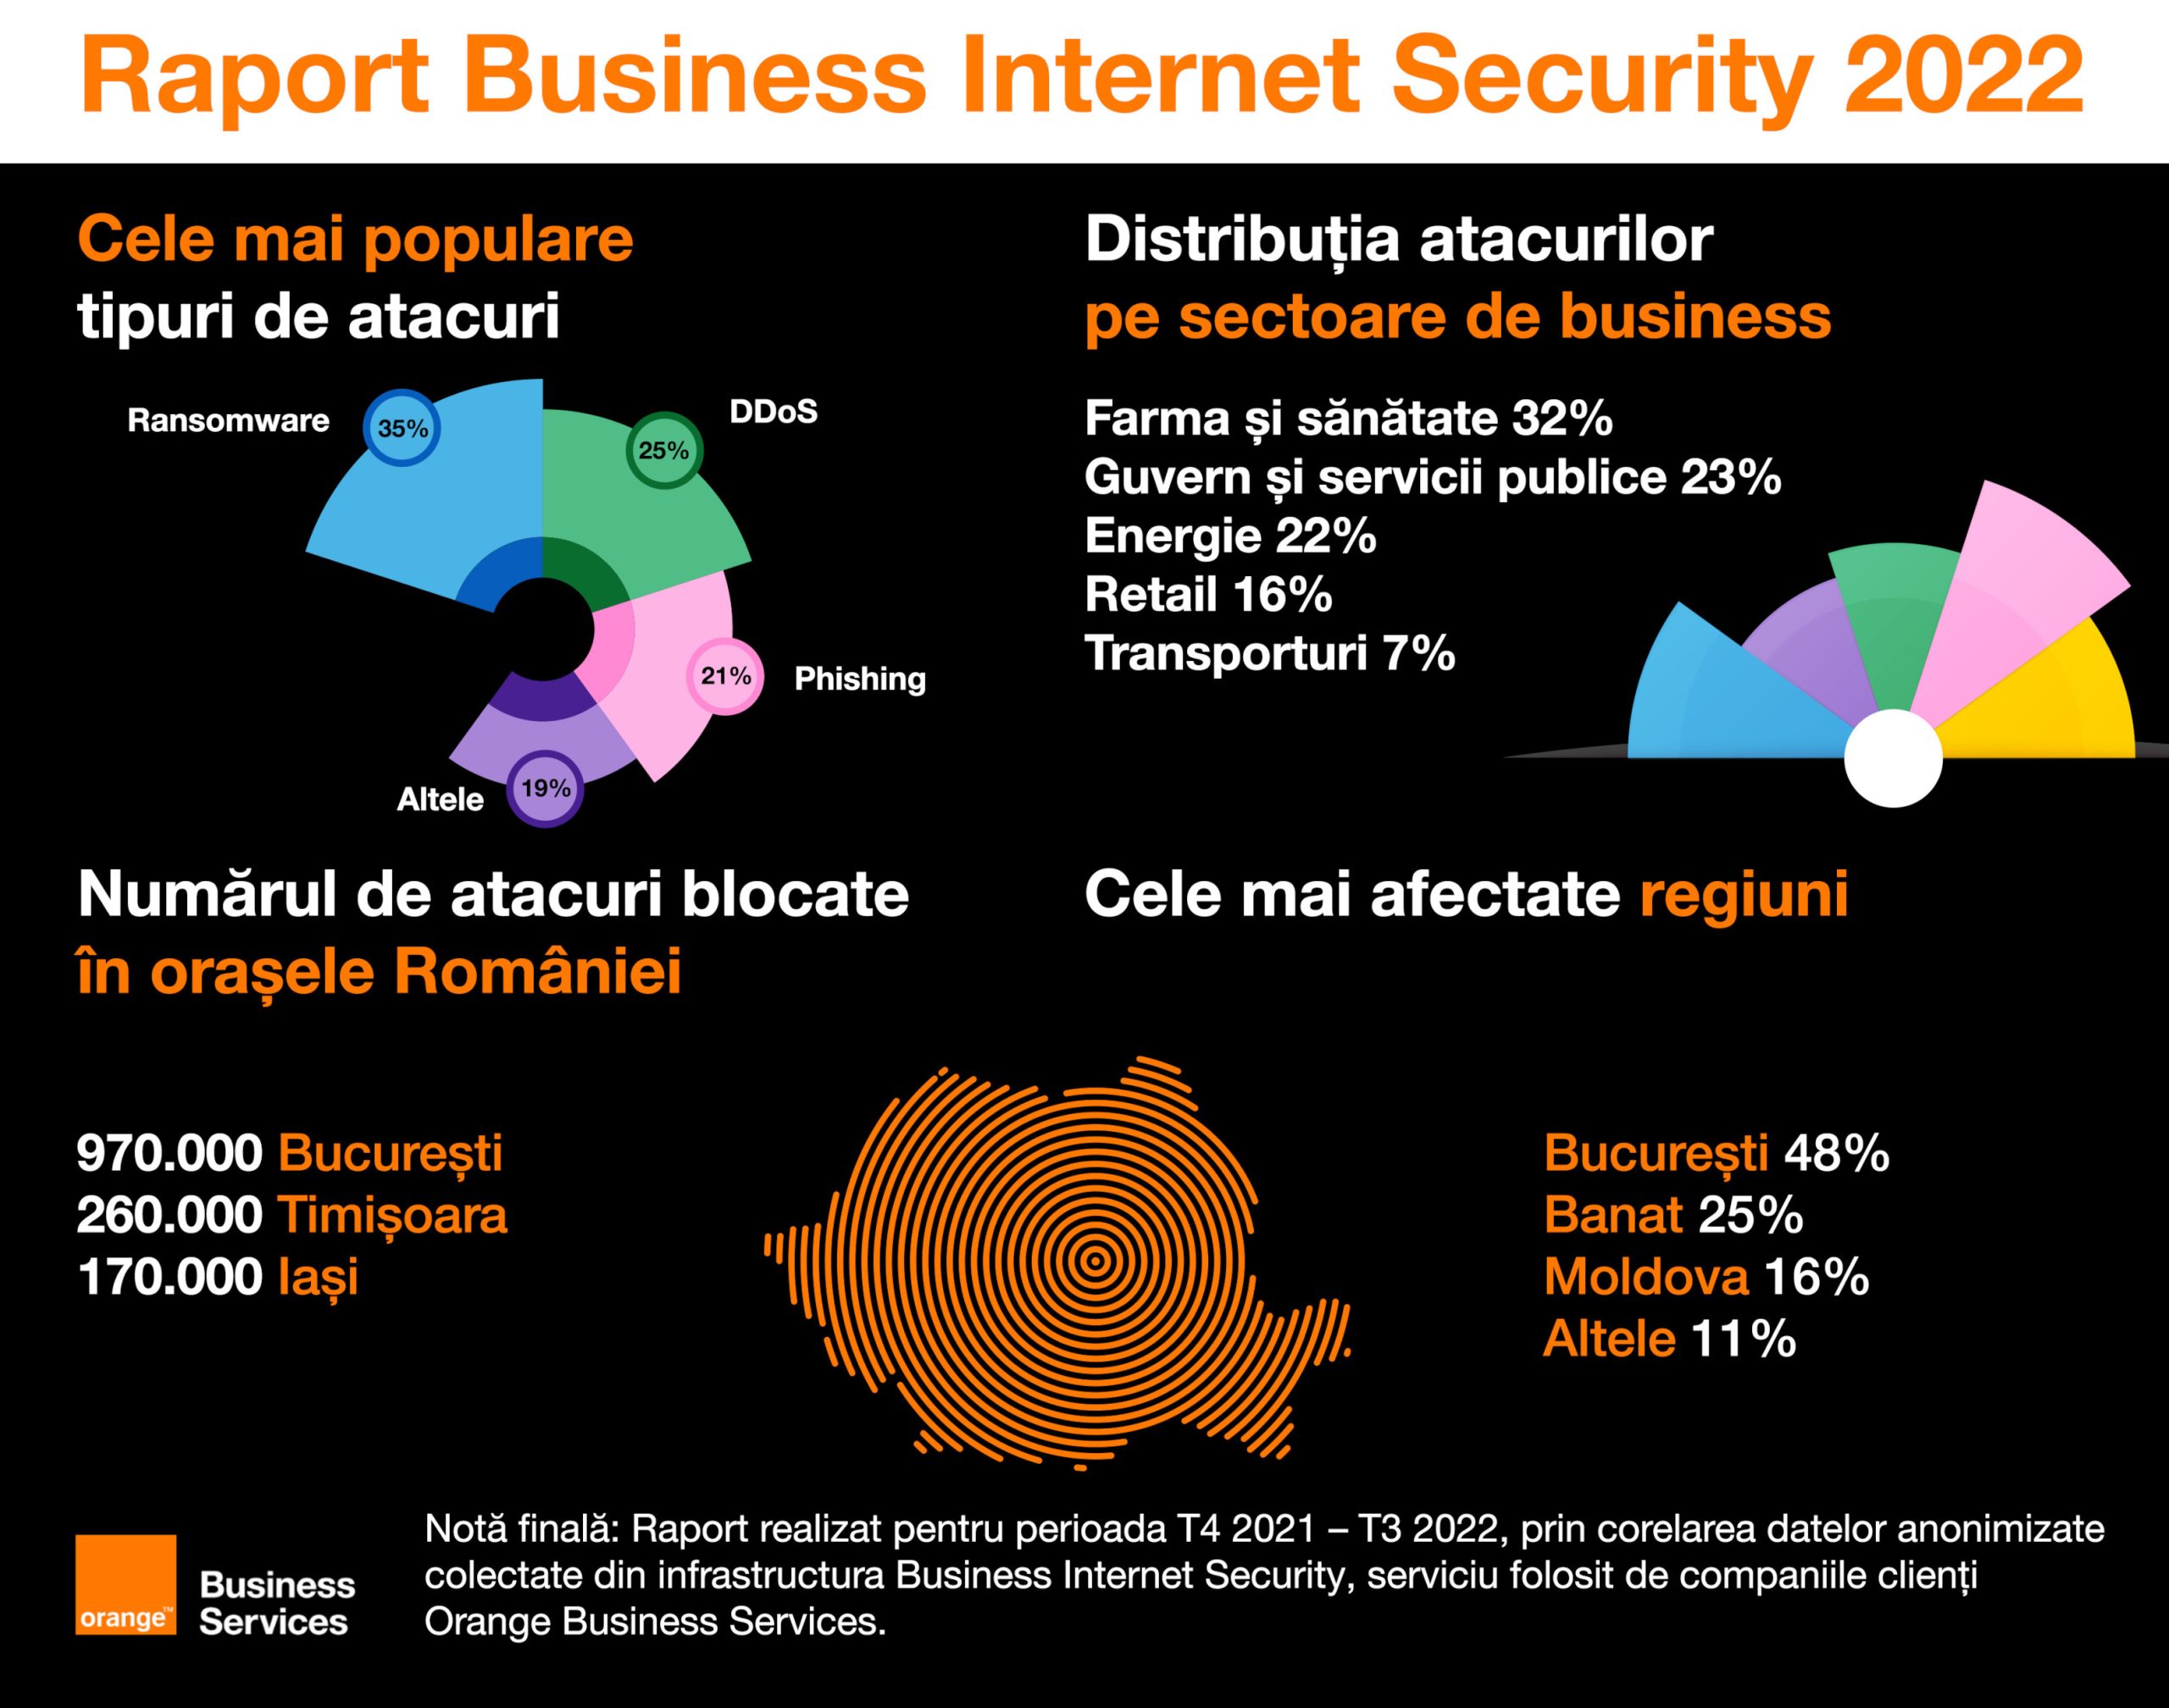 Securitatea cibernetică și amenințările la adresa companiilor și instituțiilor din România, prezentate în raportul Business Internet Security 2022 lansat de Orange Business Services